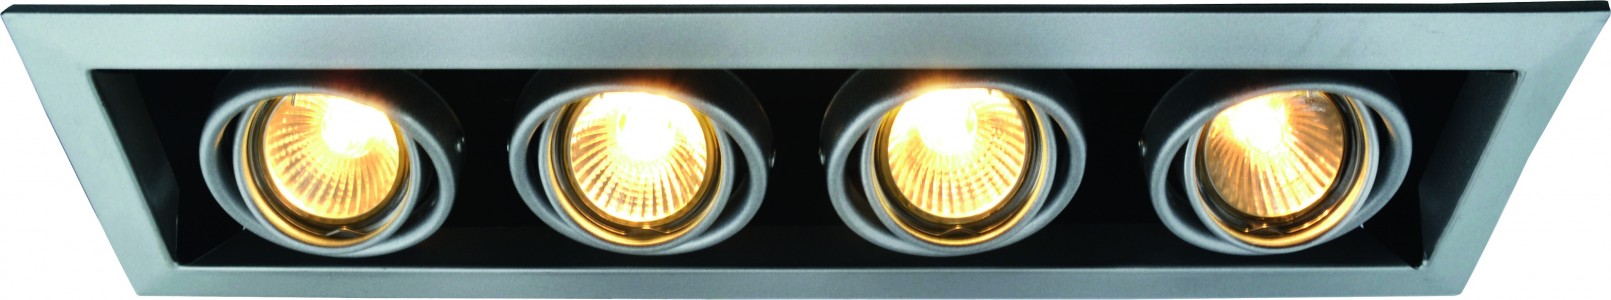 Светильник встраиваемый Arte Lamp A5941pl-4si (A5941PL-4SI)